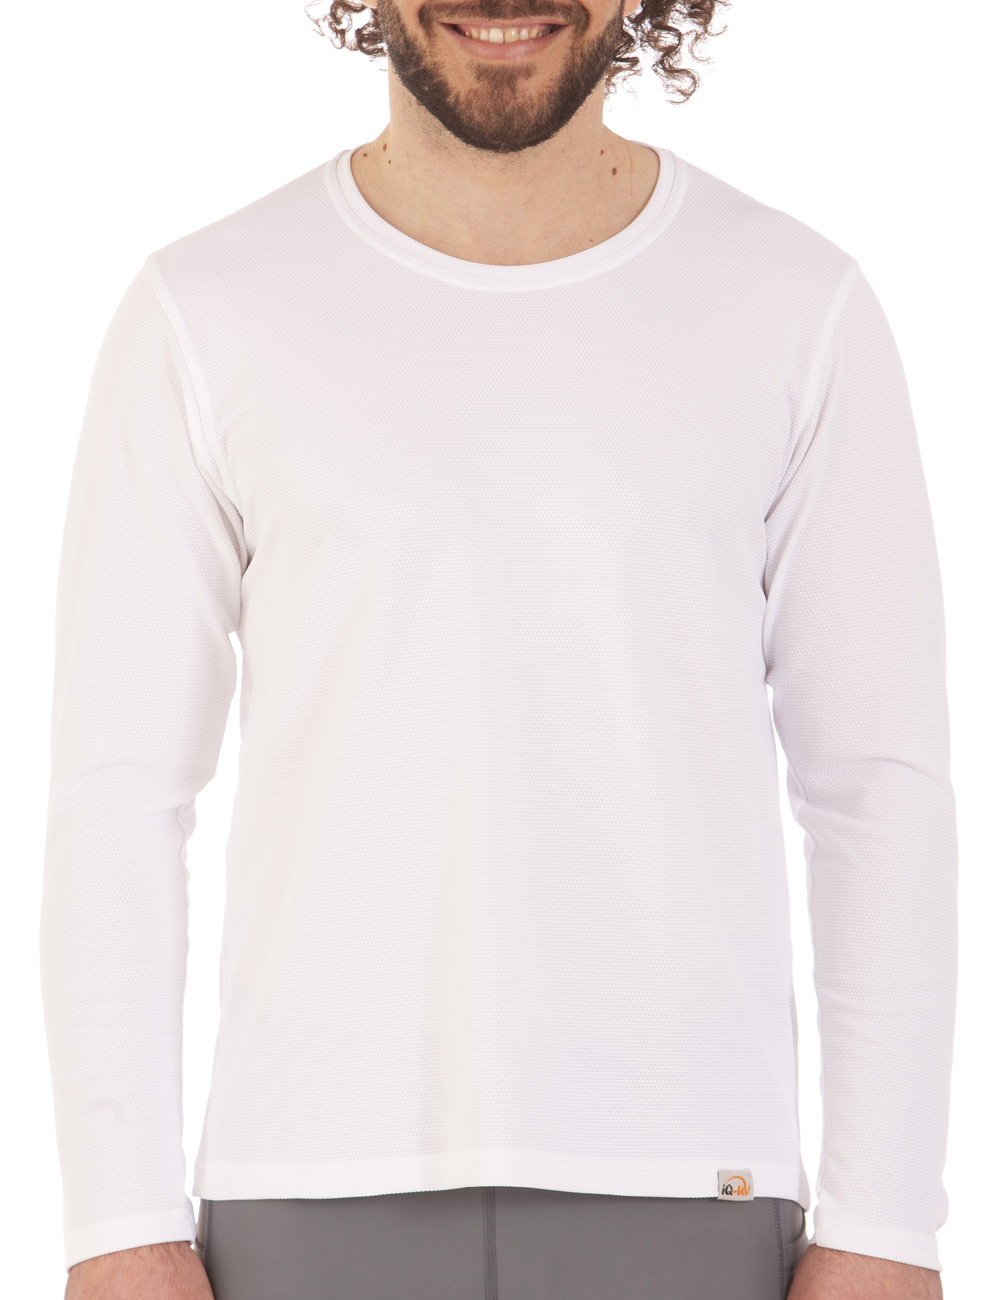 WAVE Shirt weiß front